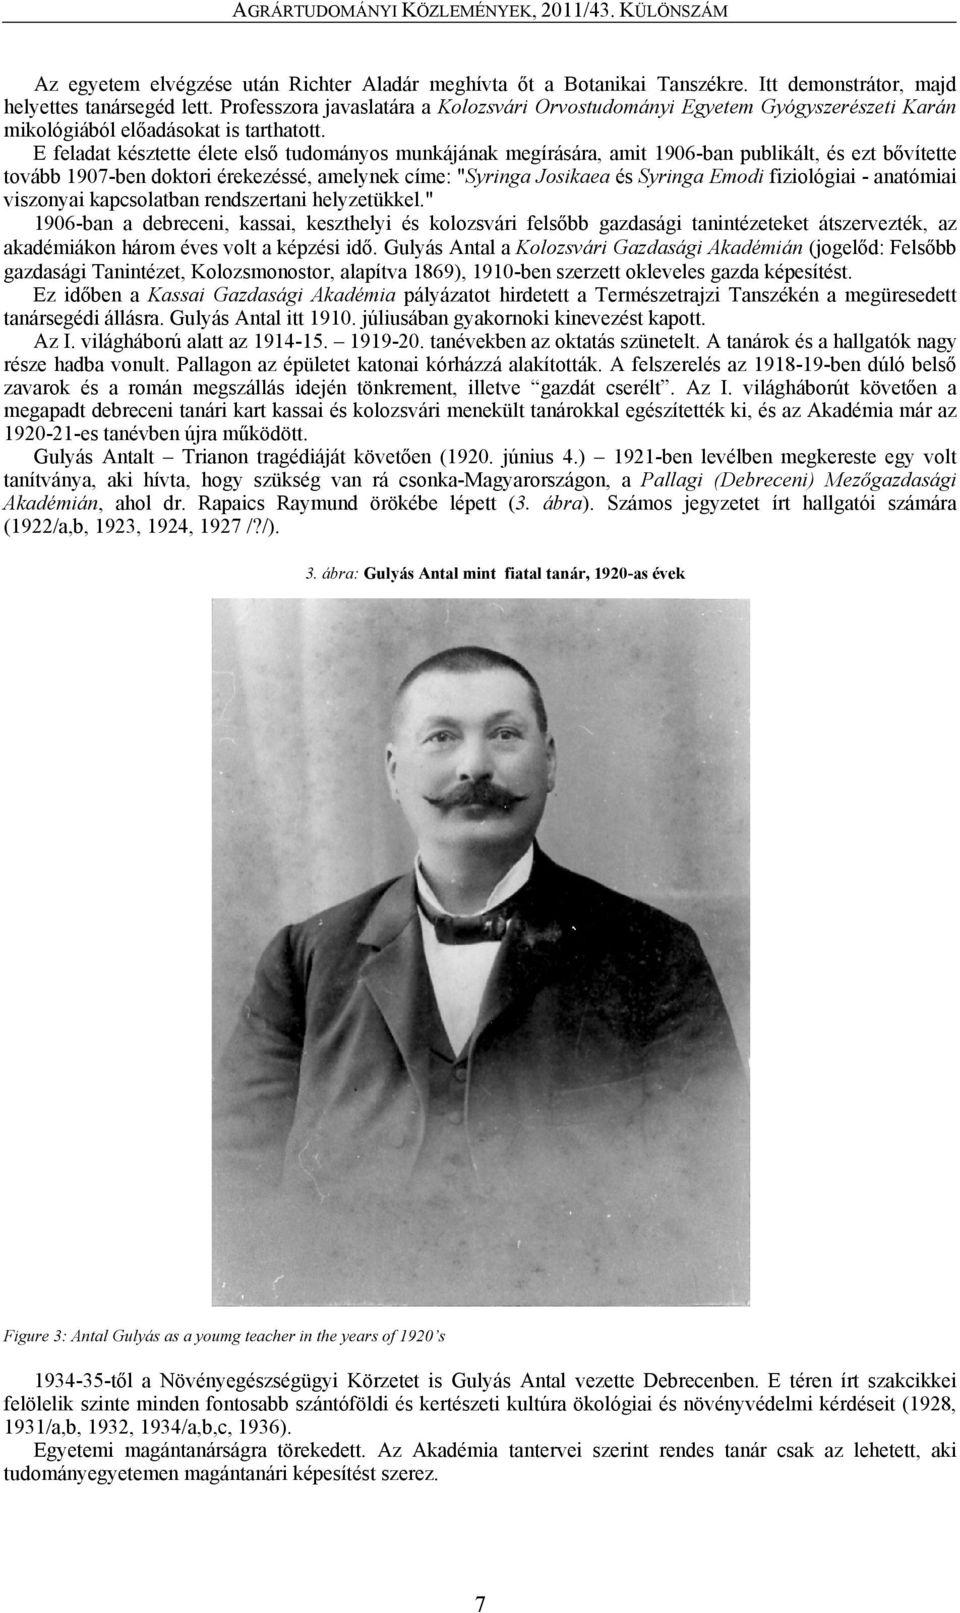 E feladat késztette élete első tudományos munkájának megírására, amit 1906-ban publikált, és ezt bővítette tovább 1907-ben doktori érekezéssé, amelynek címe: "Syringa Josikaea és Syringa Emodi